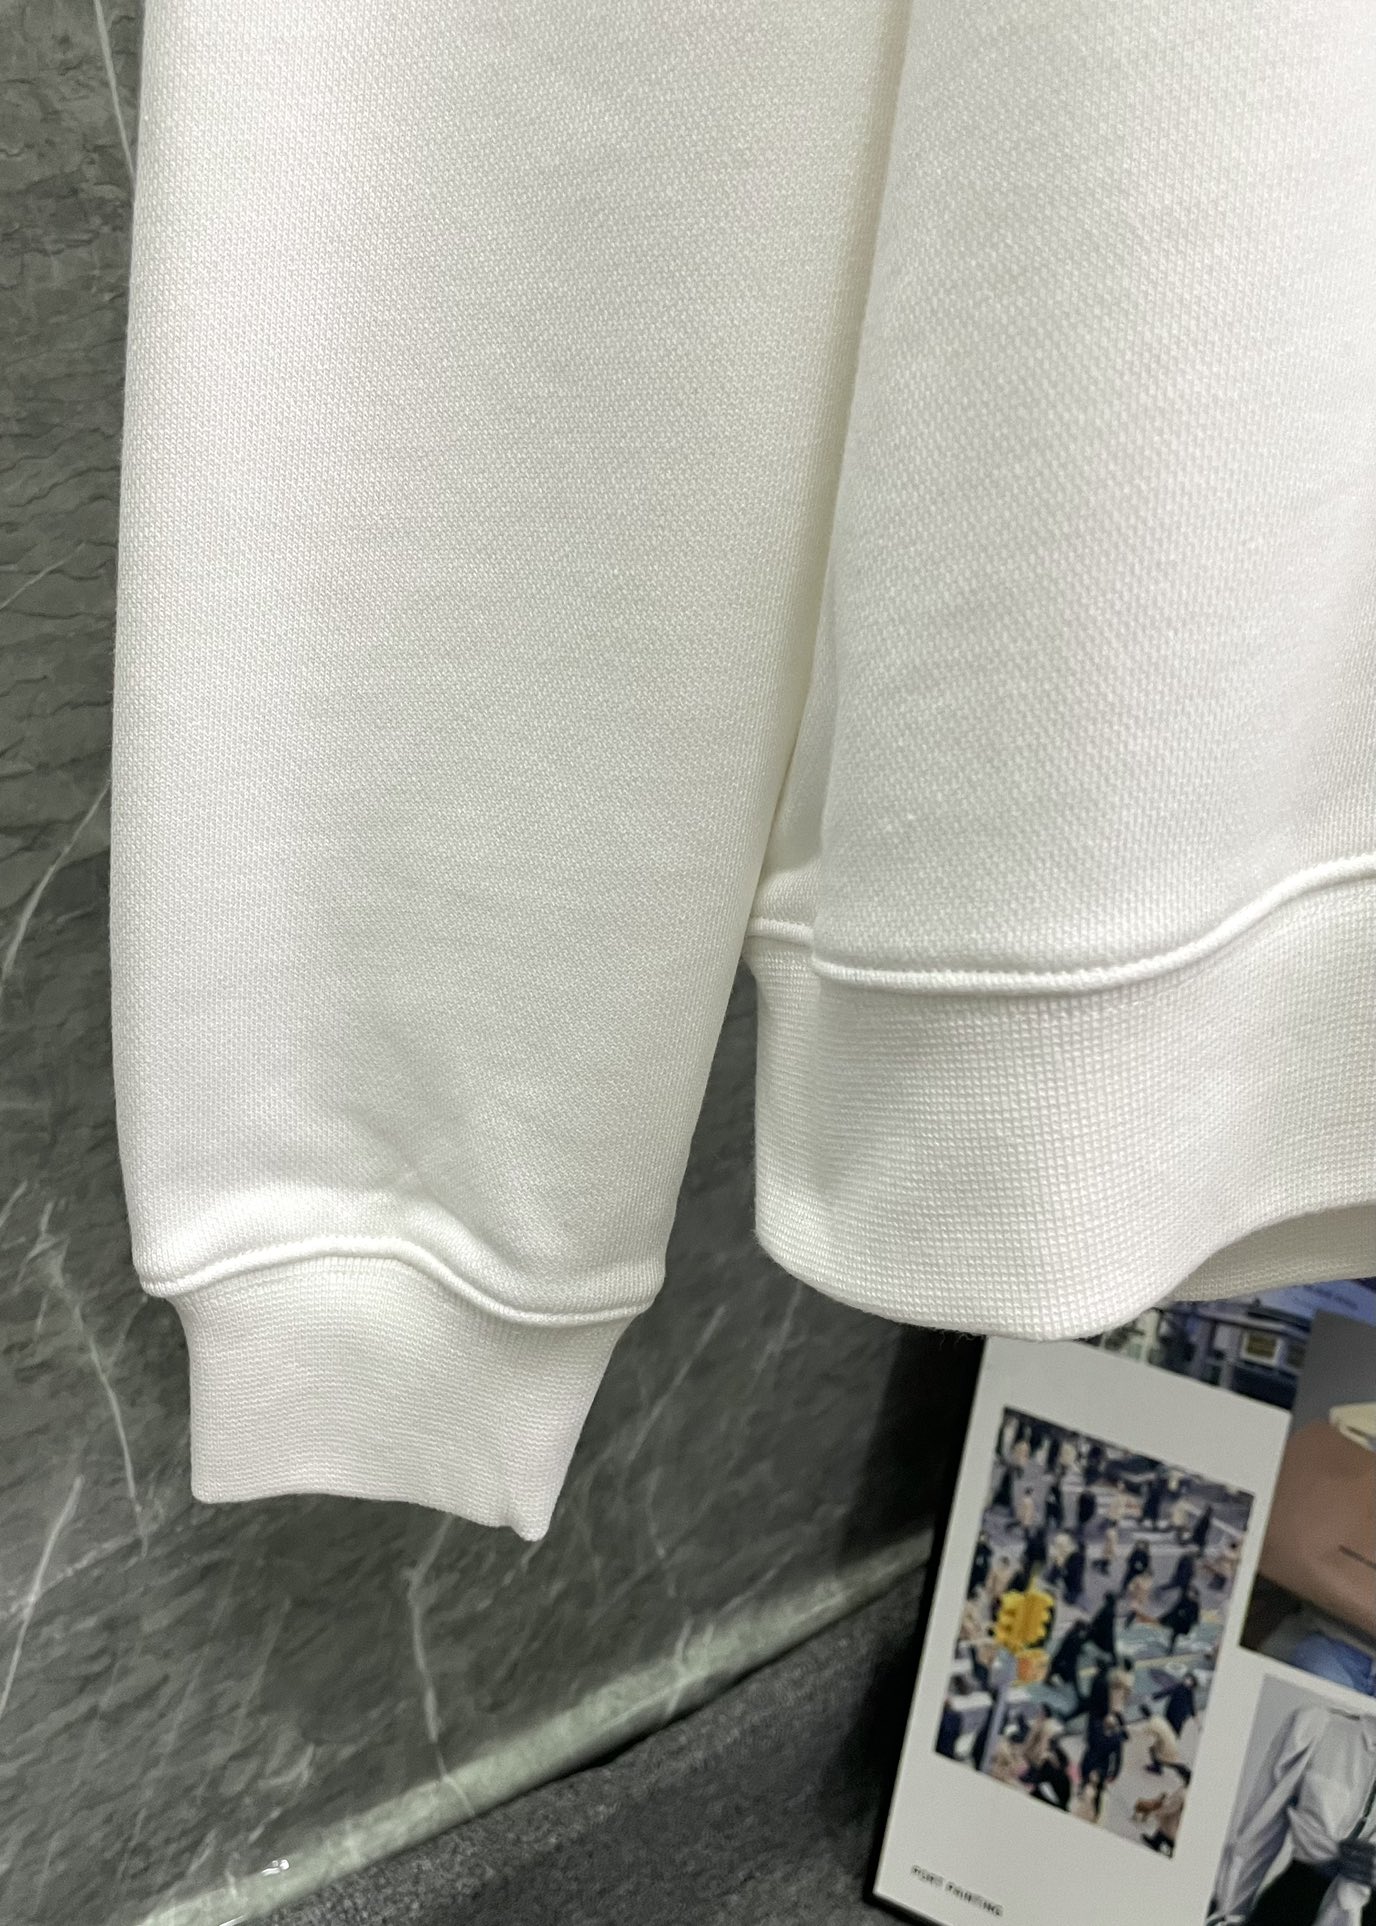 ロエベに似たブランド激安通販 柔らかくて暖かい トップス 長袖シャツ シンプル ホワイト_4